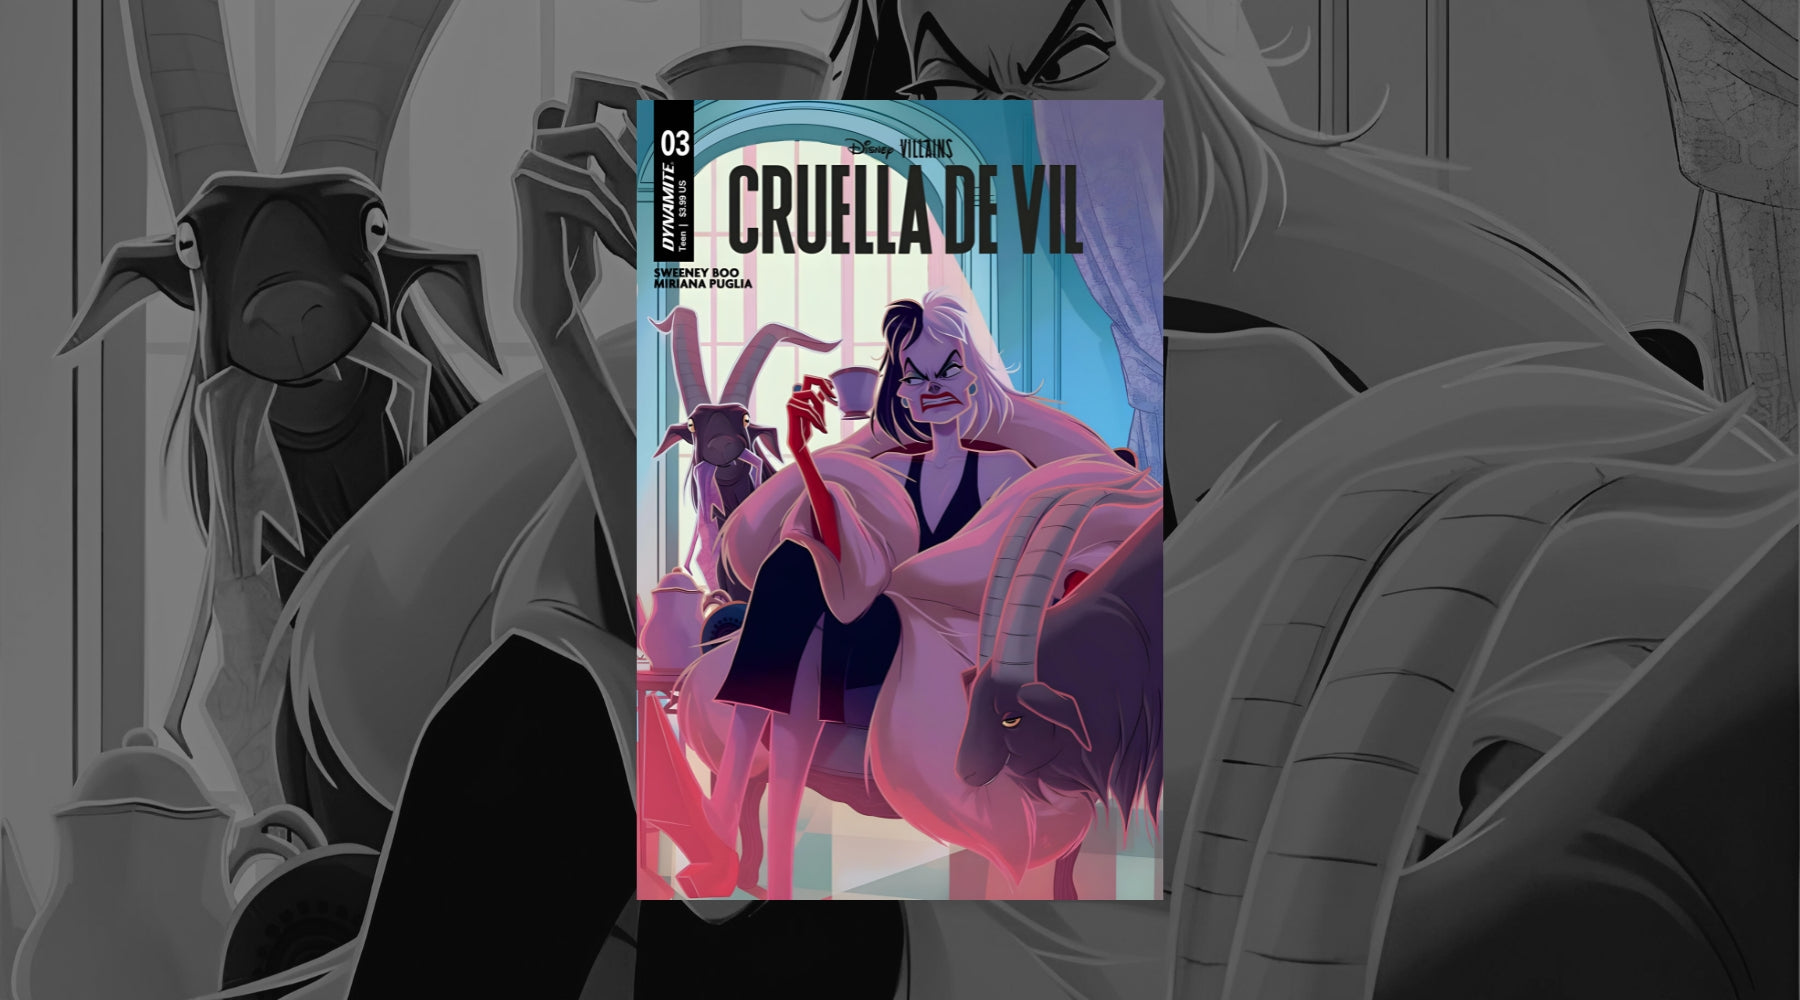 Cruella De Vil: From Fur-Obsessed Fashionista to Big Screen Icon